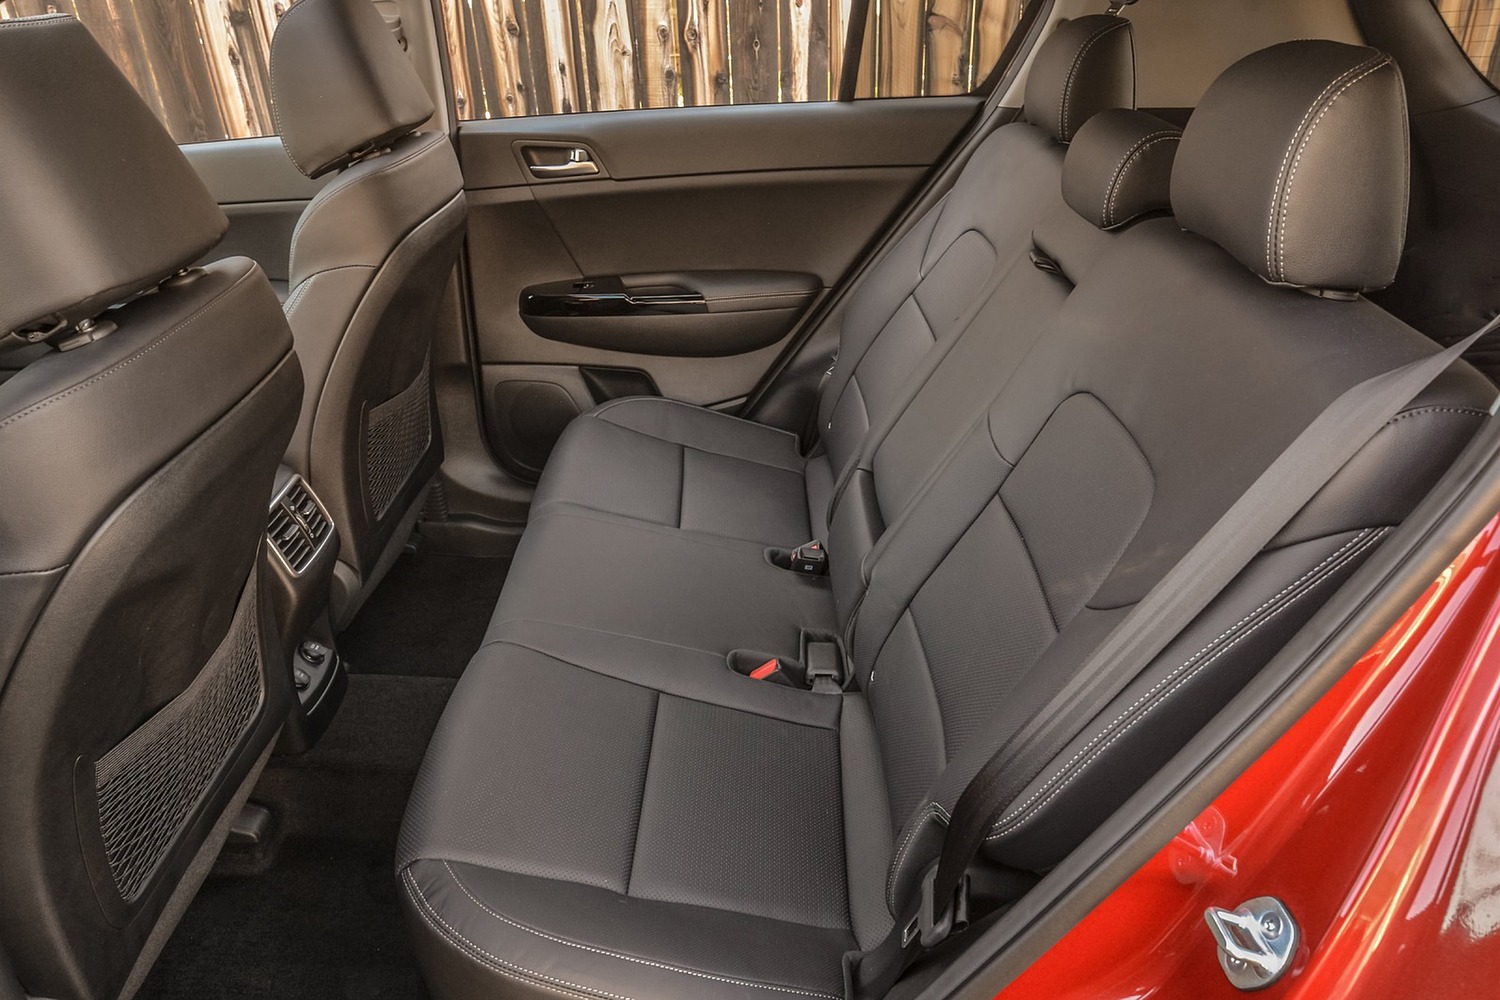 2017 Kia Sportage SX 4dr SUV Rear Interior Shown